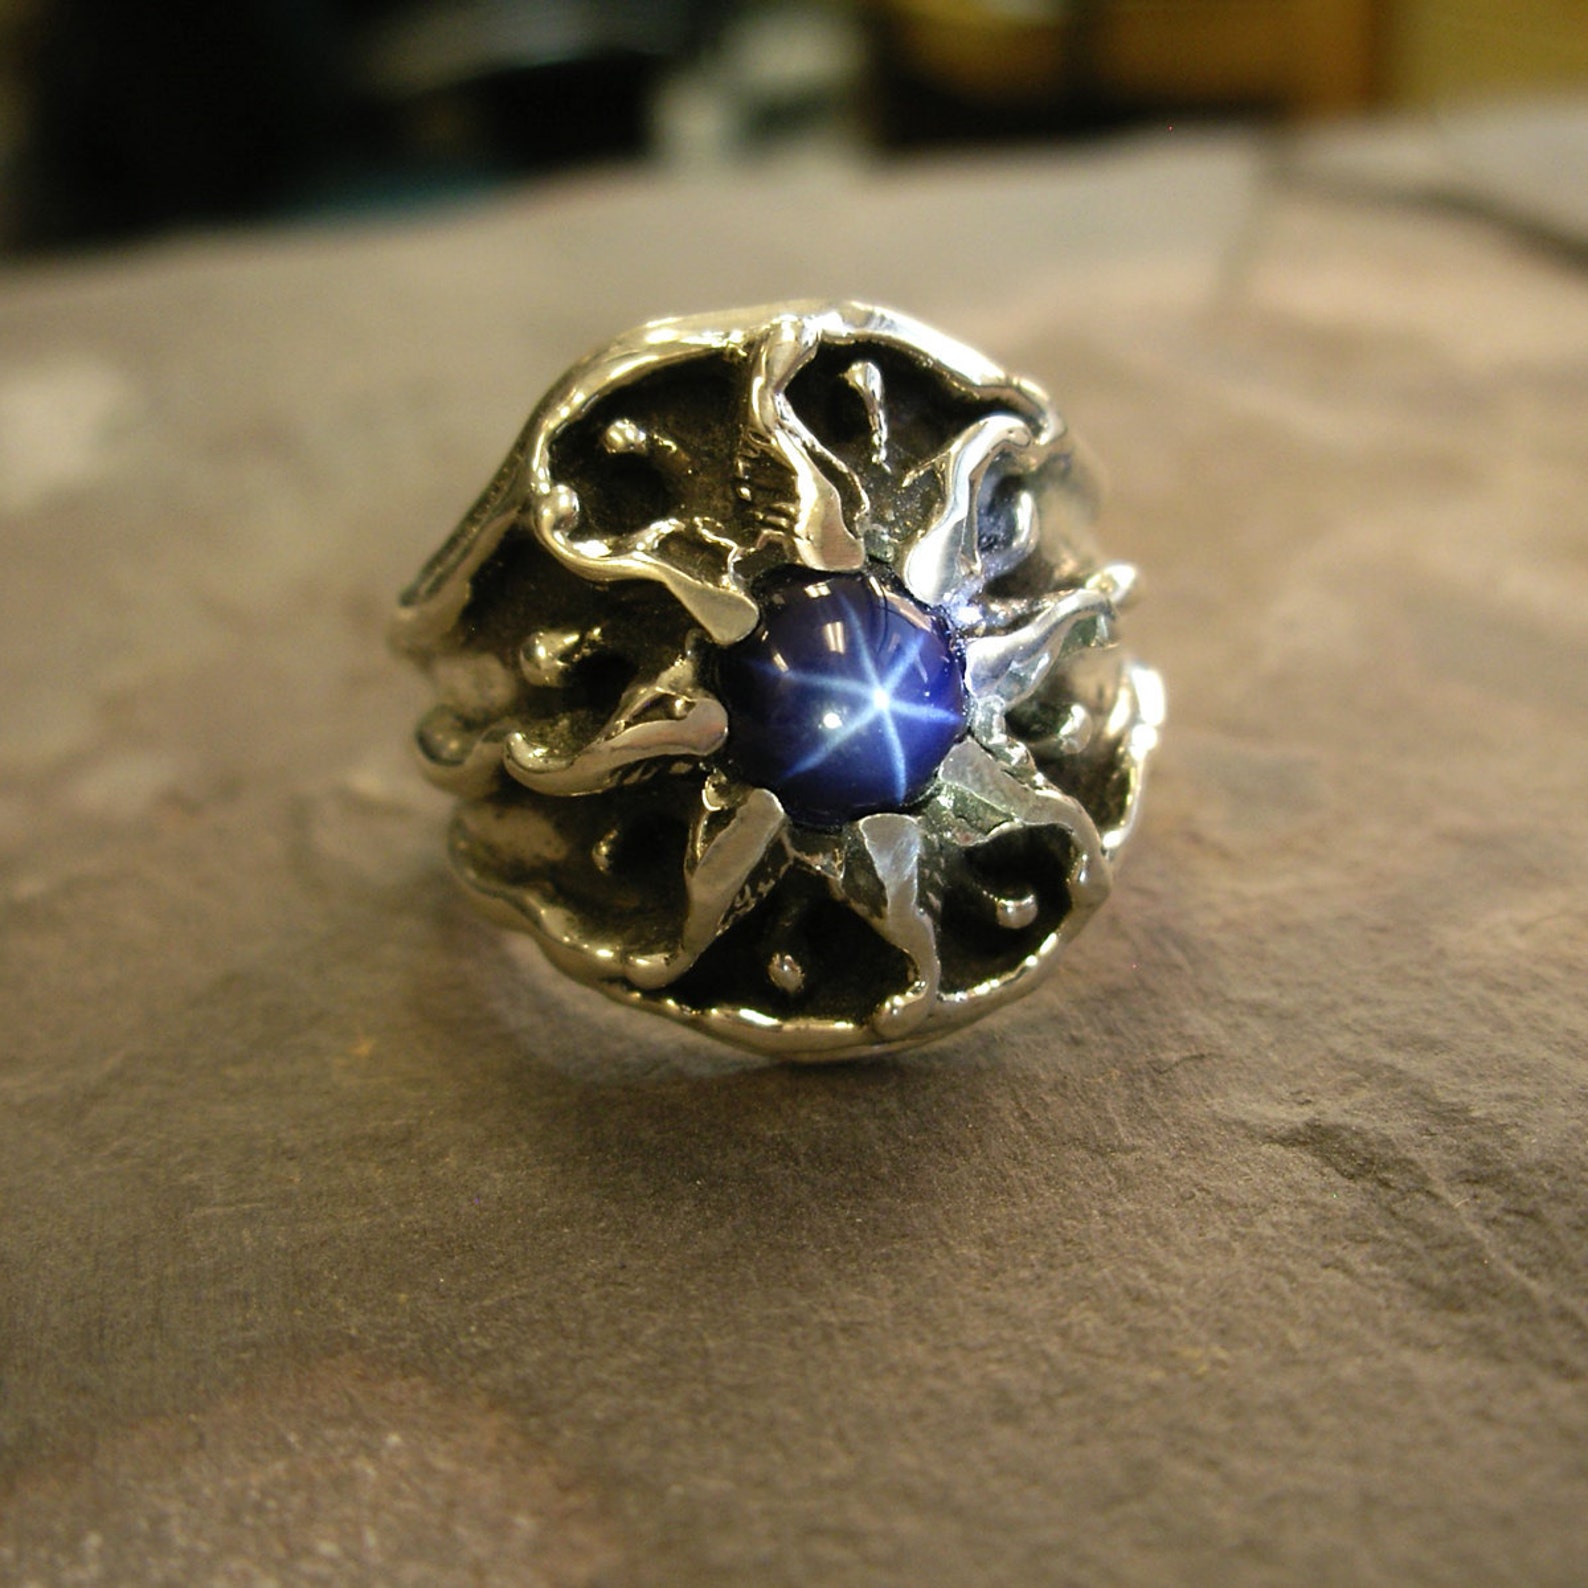 Vintage Design Sterling Silver Mens Sunburst Ring With a Star - Etsy